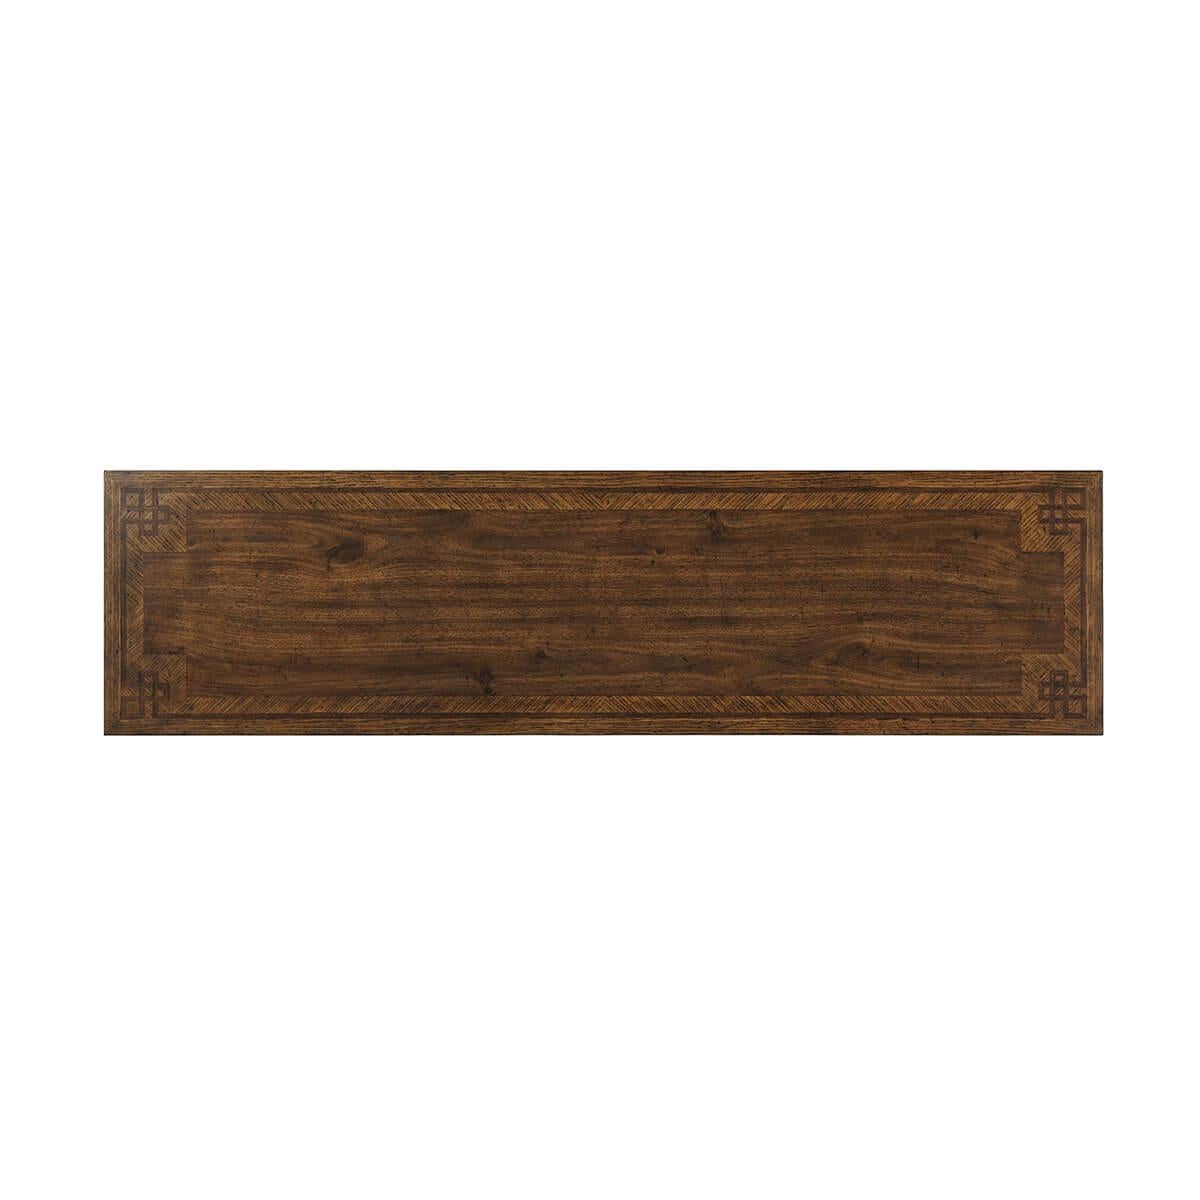 Mit einer rechteckigen, nussbaumfurnierten Intarsienplatte über einem Stahlsockel in Curule-Form.

Abmessungen: 60